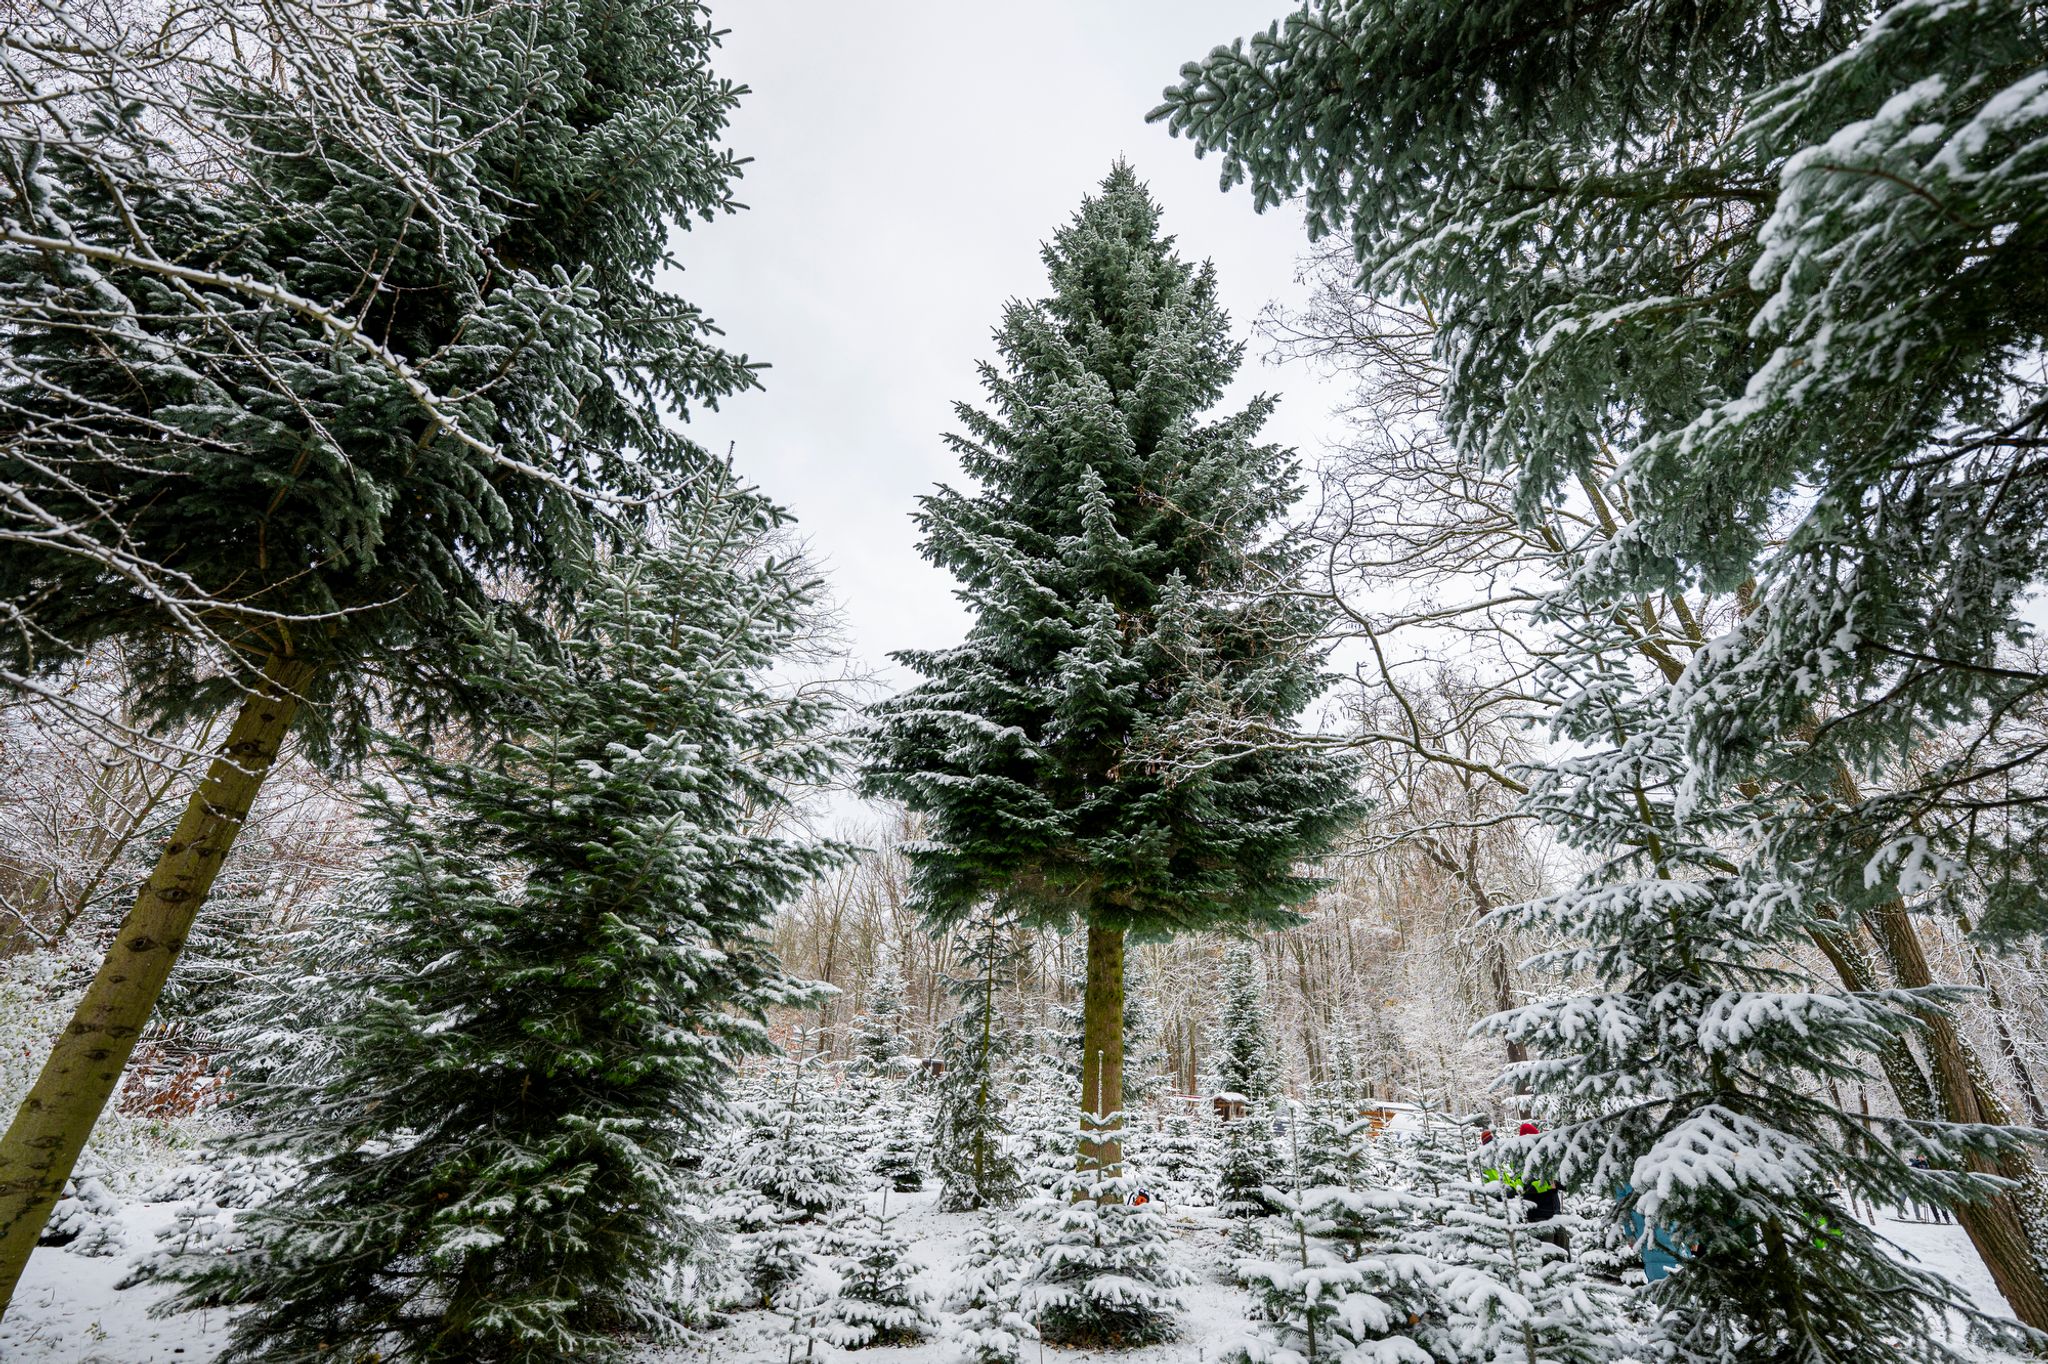 Der Weihnachtsbaum für das Brandenburger Tor in Berlin stammt dieses Jahr aus Thüringen. Aber nicht alle Weihnachtsbäume kommen aus dem heimischen Anbau.